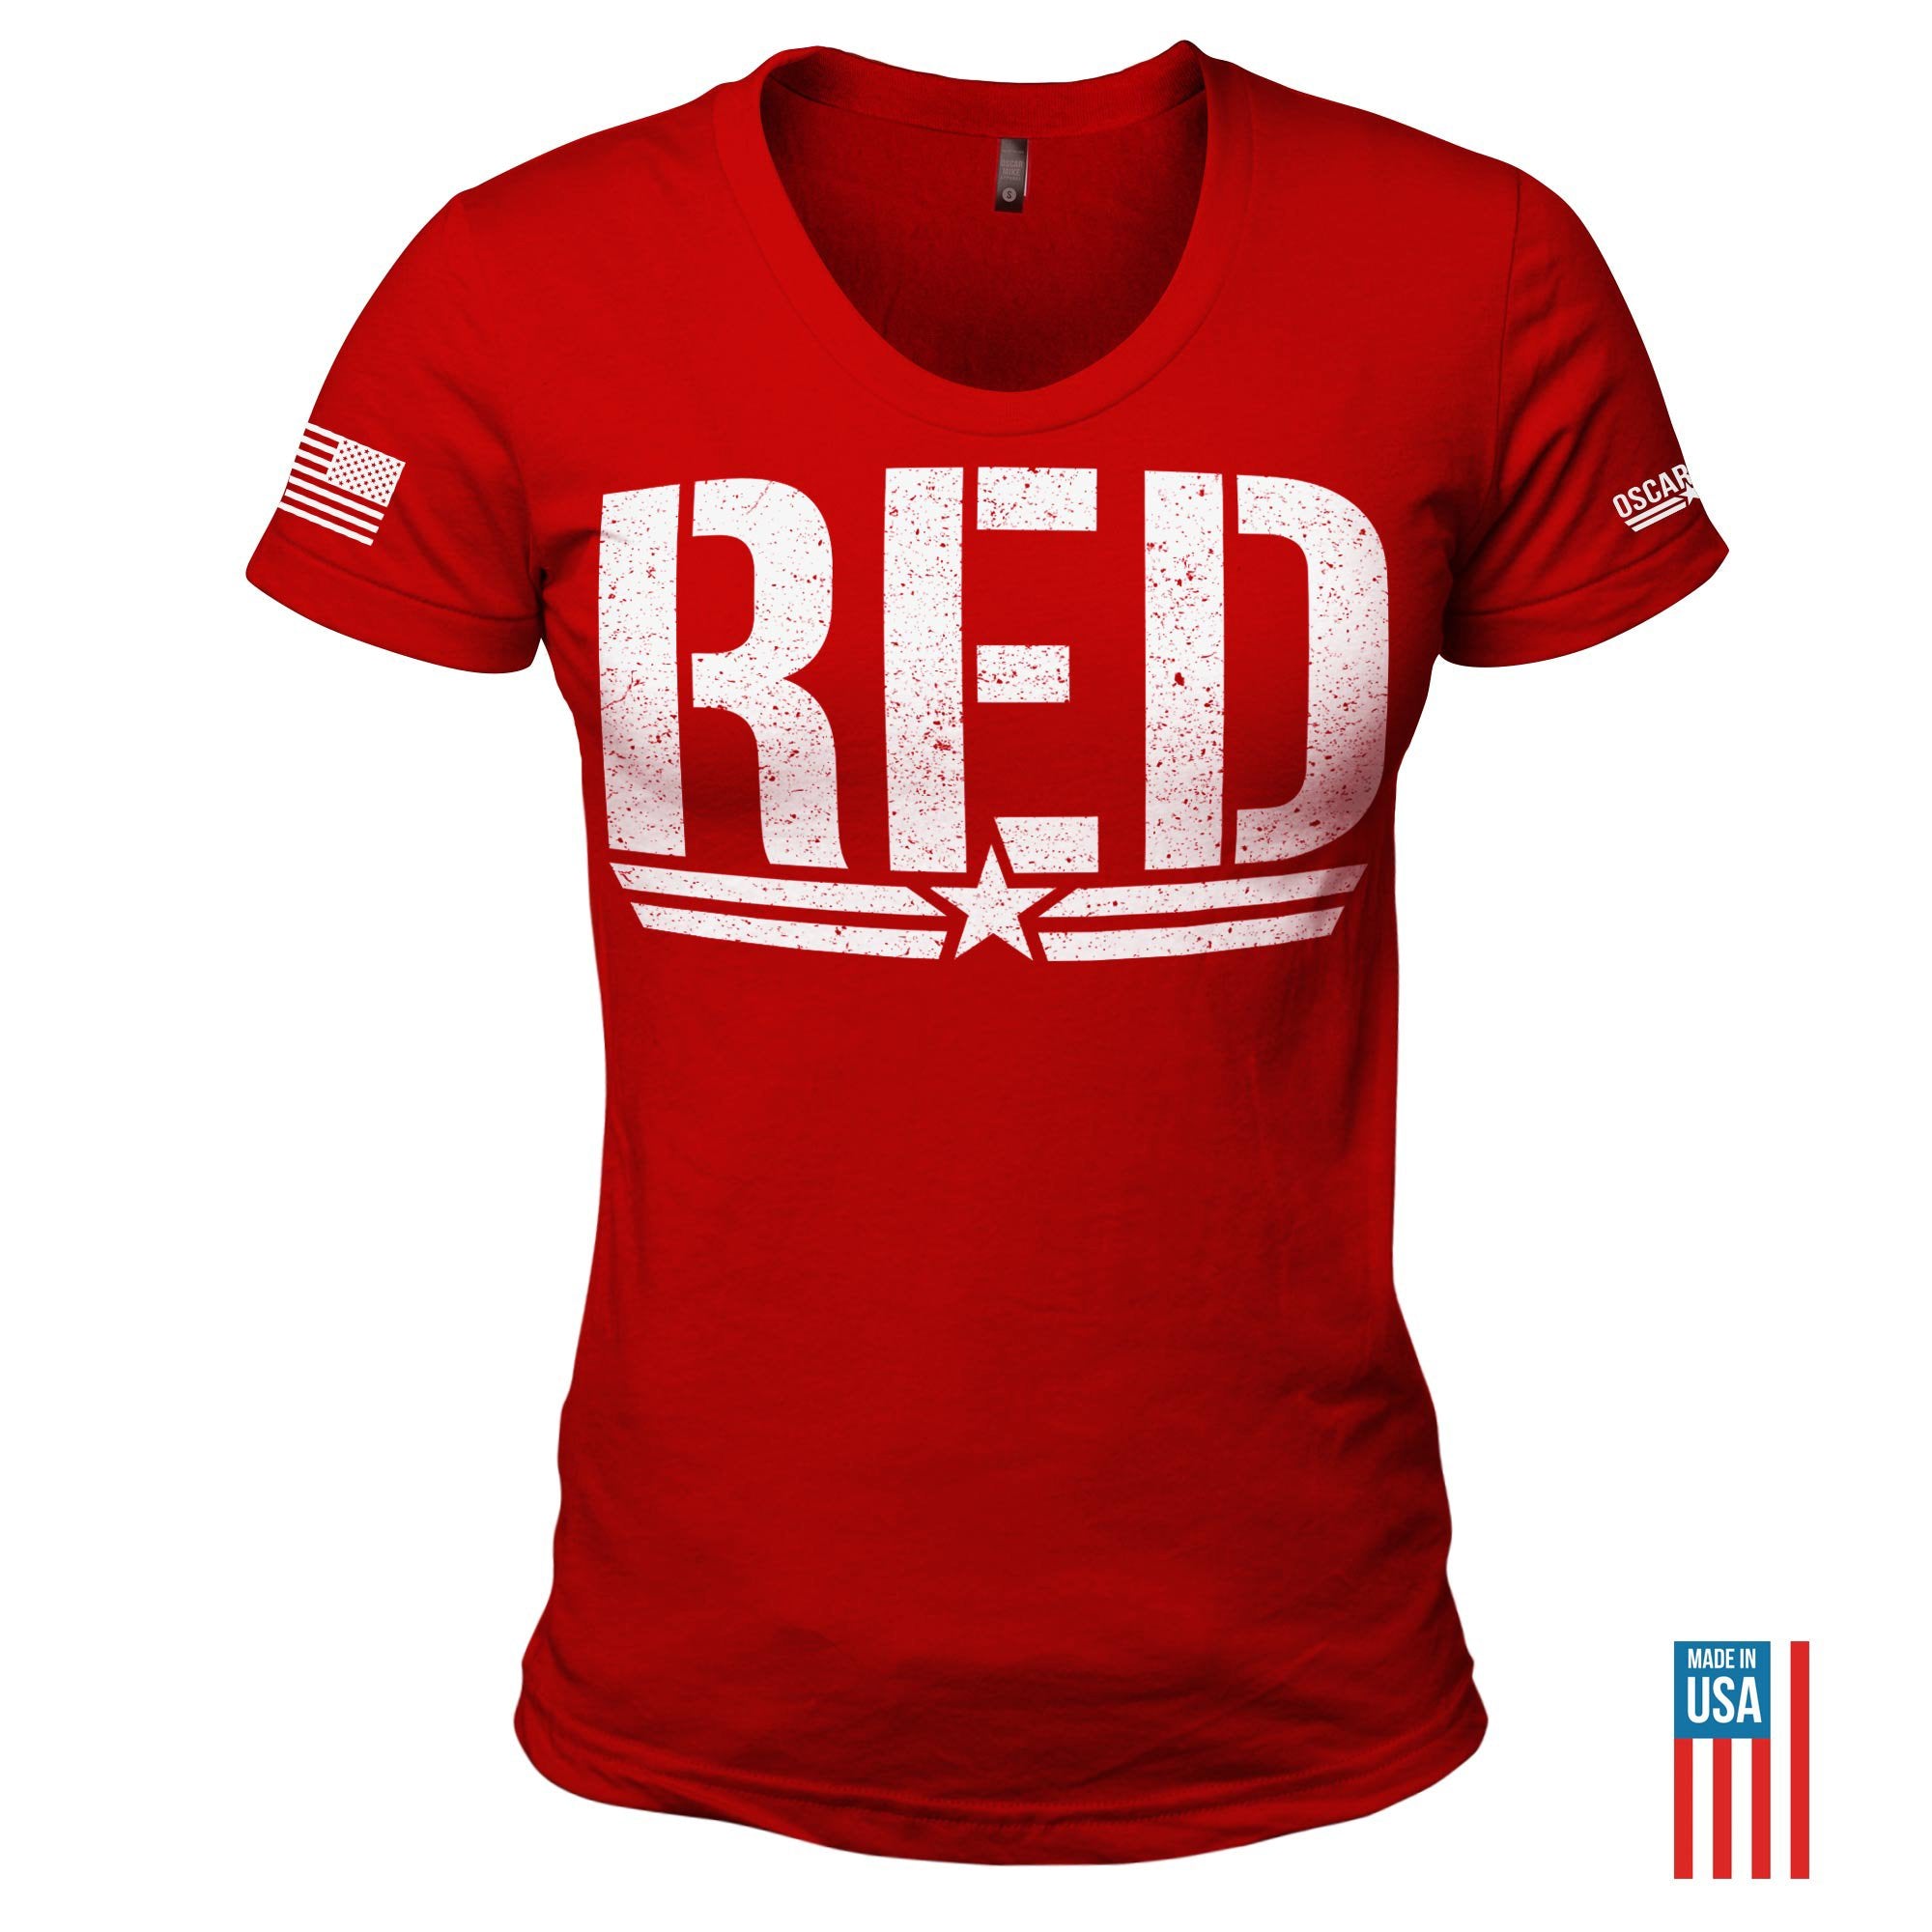 Women's Big R.E.D. Tee T-Shirt from Oscar Mike Apparel